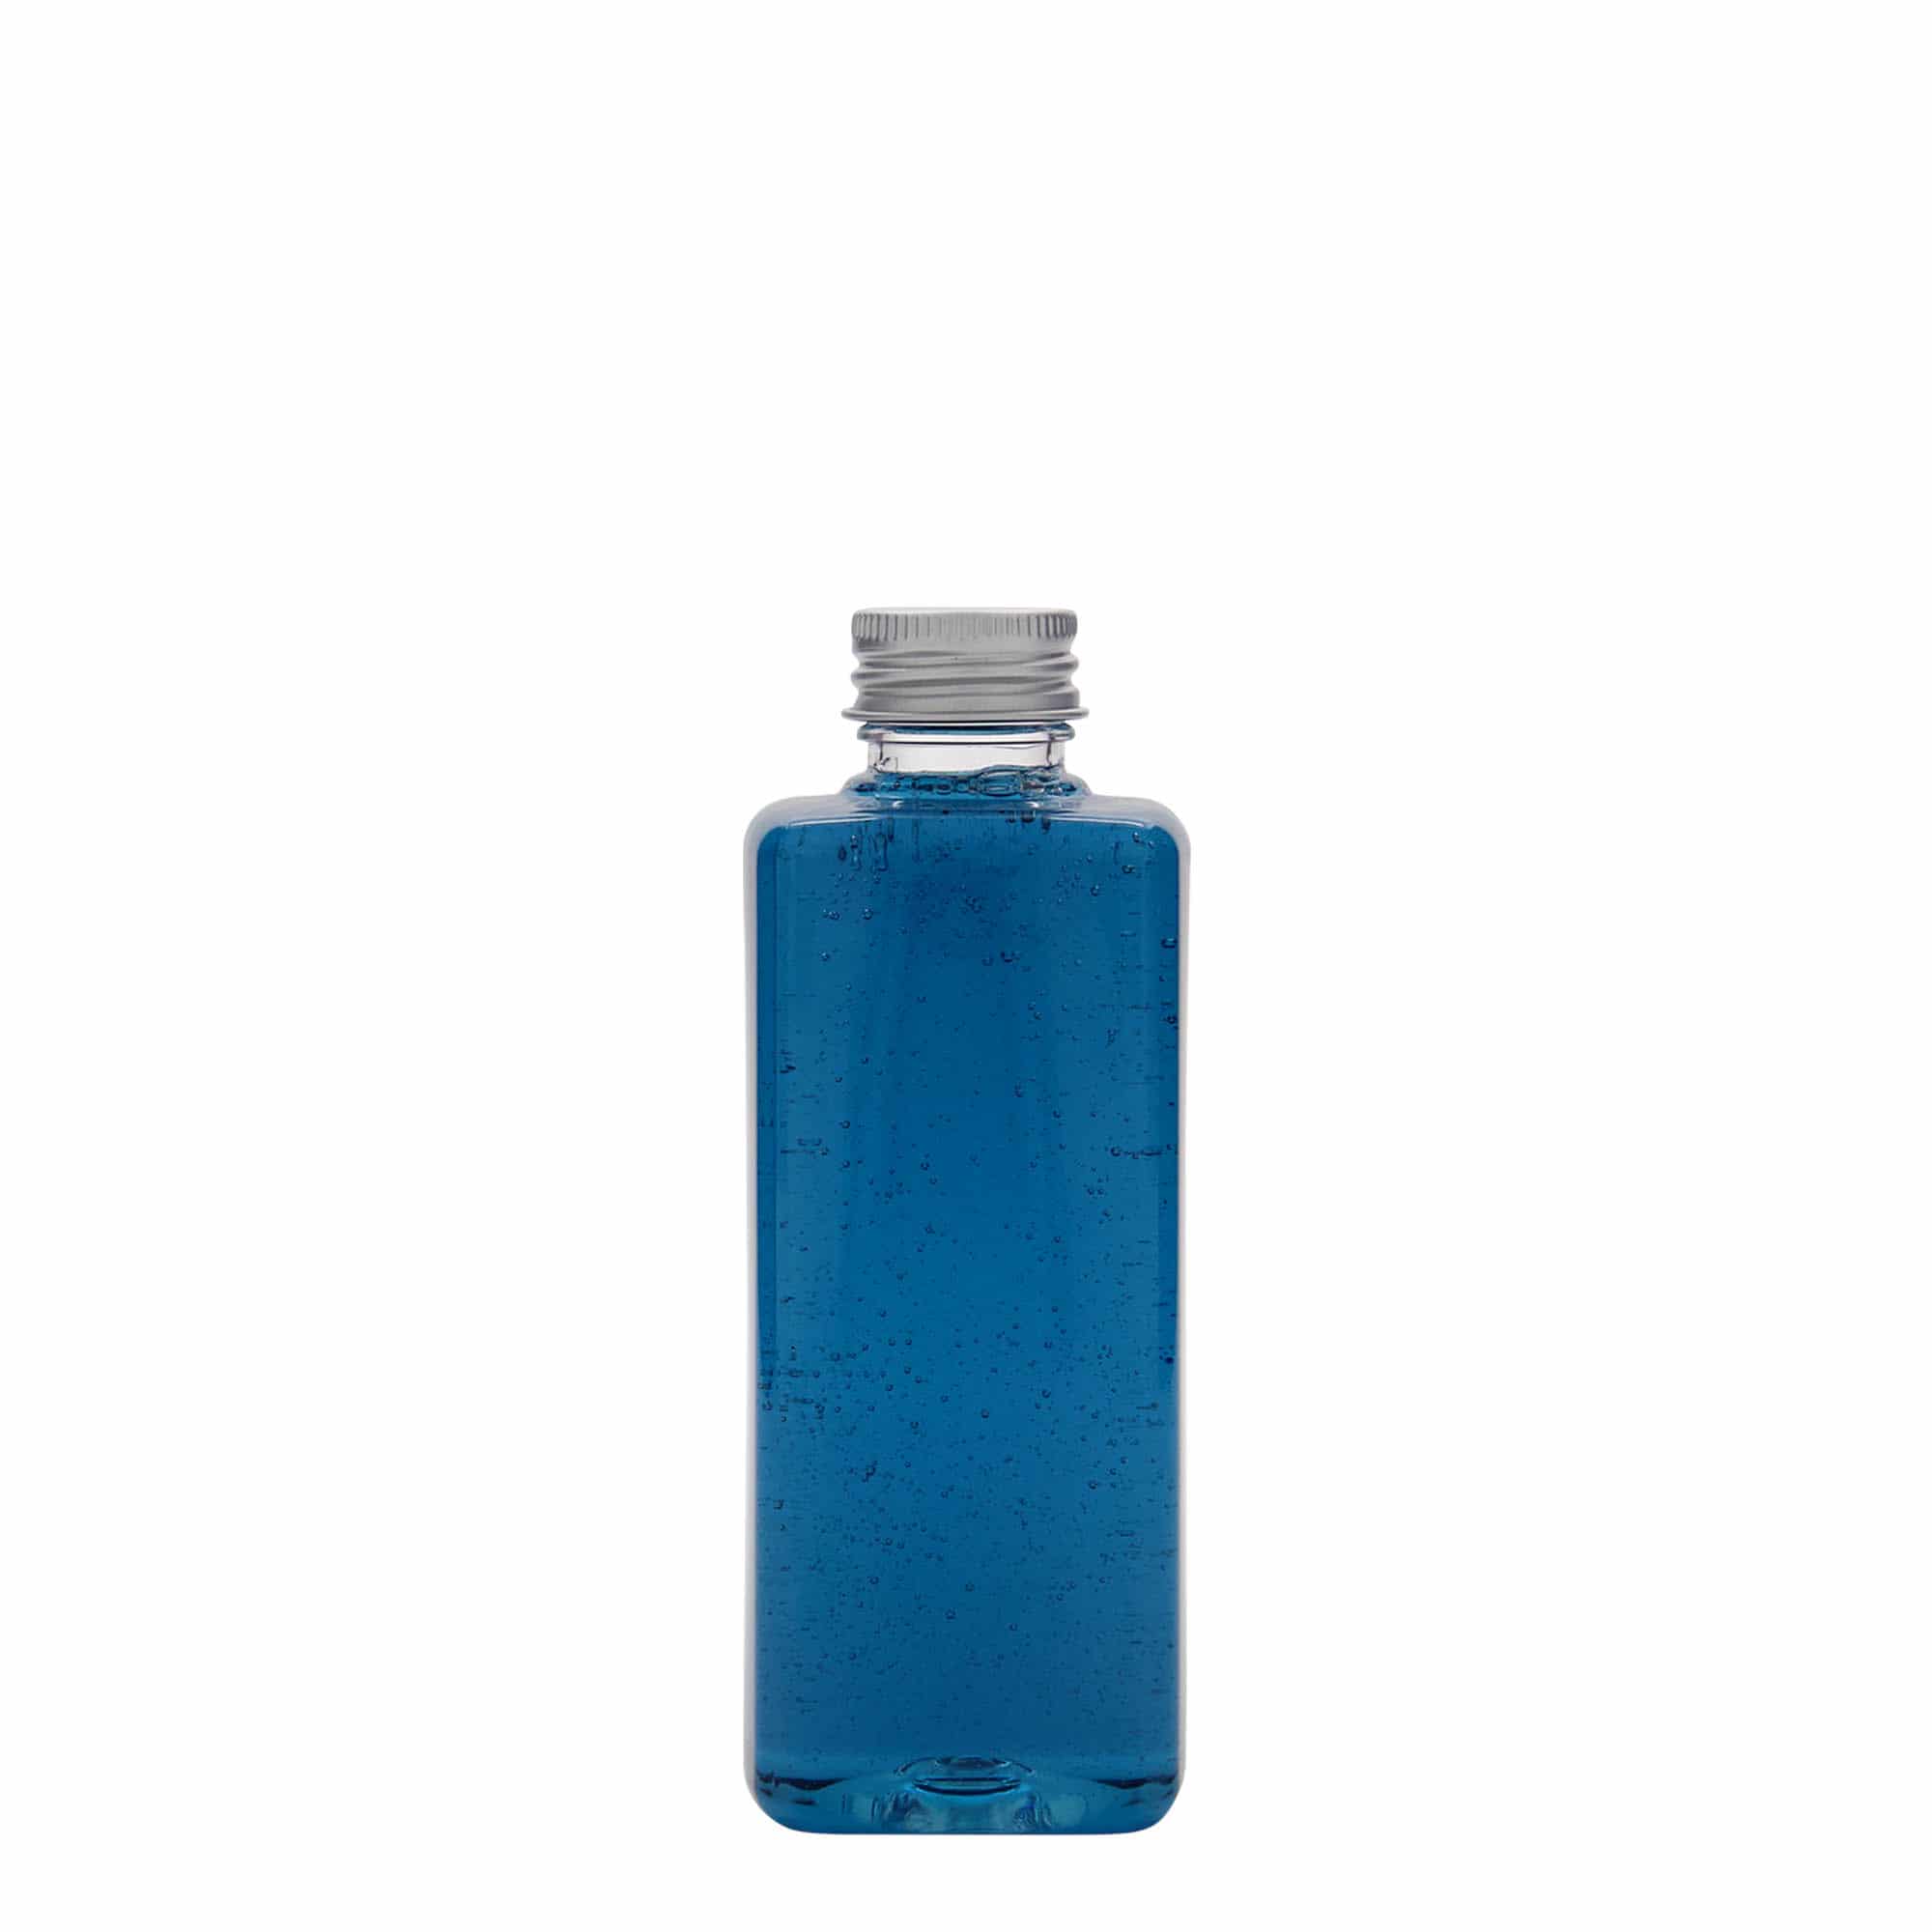 200 ml PET bottle 'Karl', square, plastic, closure: GPI 24/410